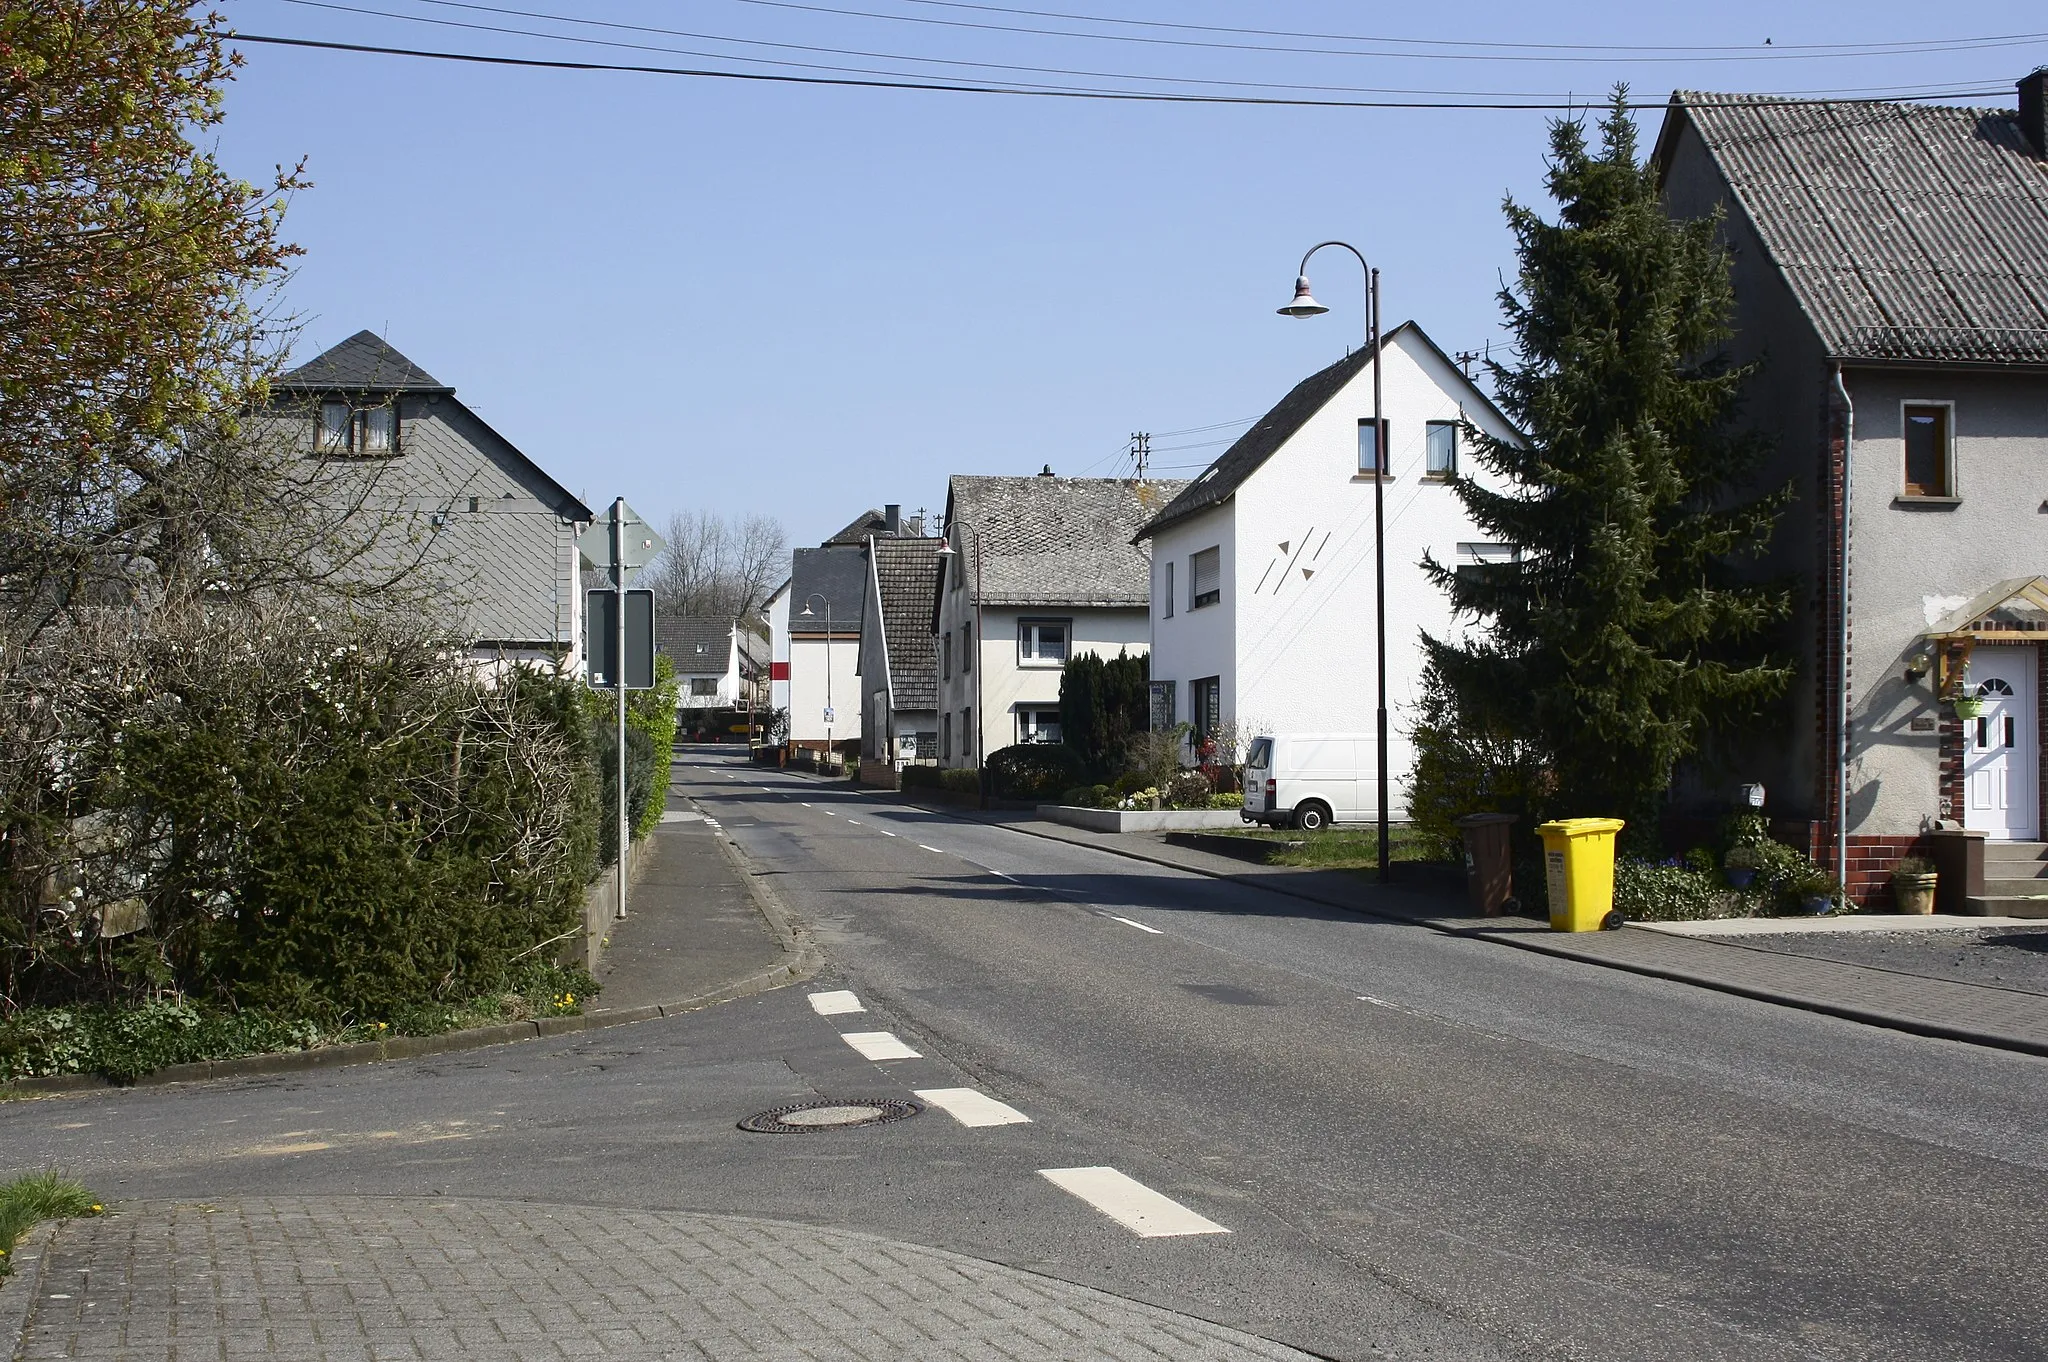 Photo showing: Oberahr, Westerwaldkreis, Rheinland-Pfalz, Deutschland